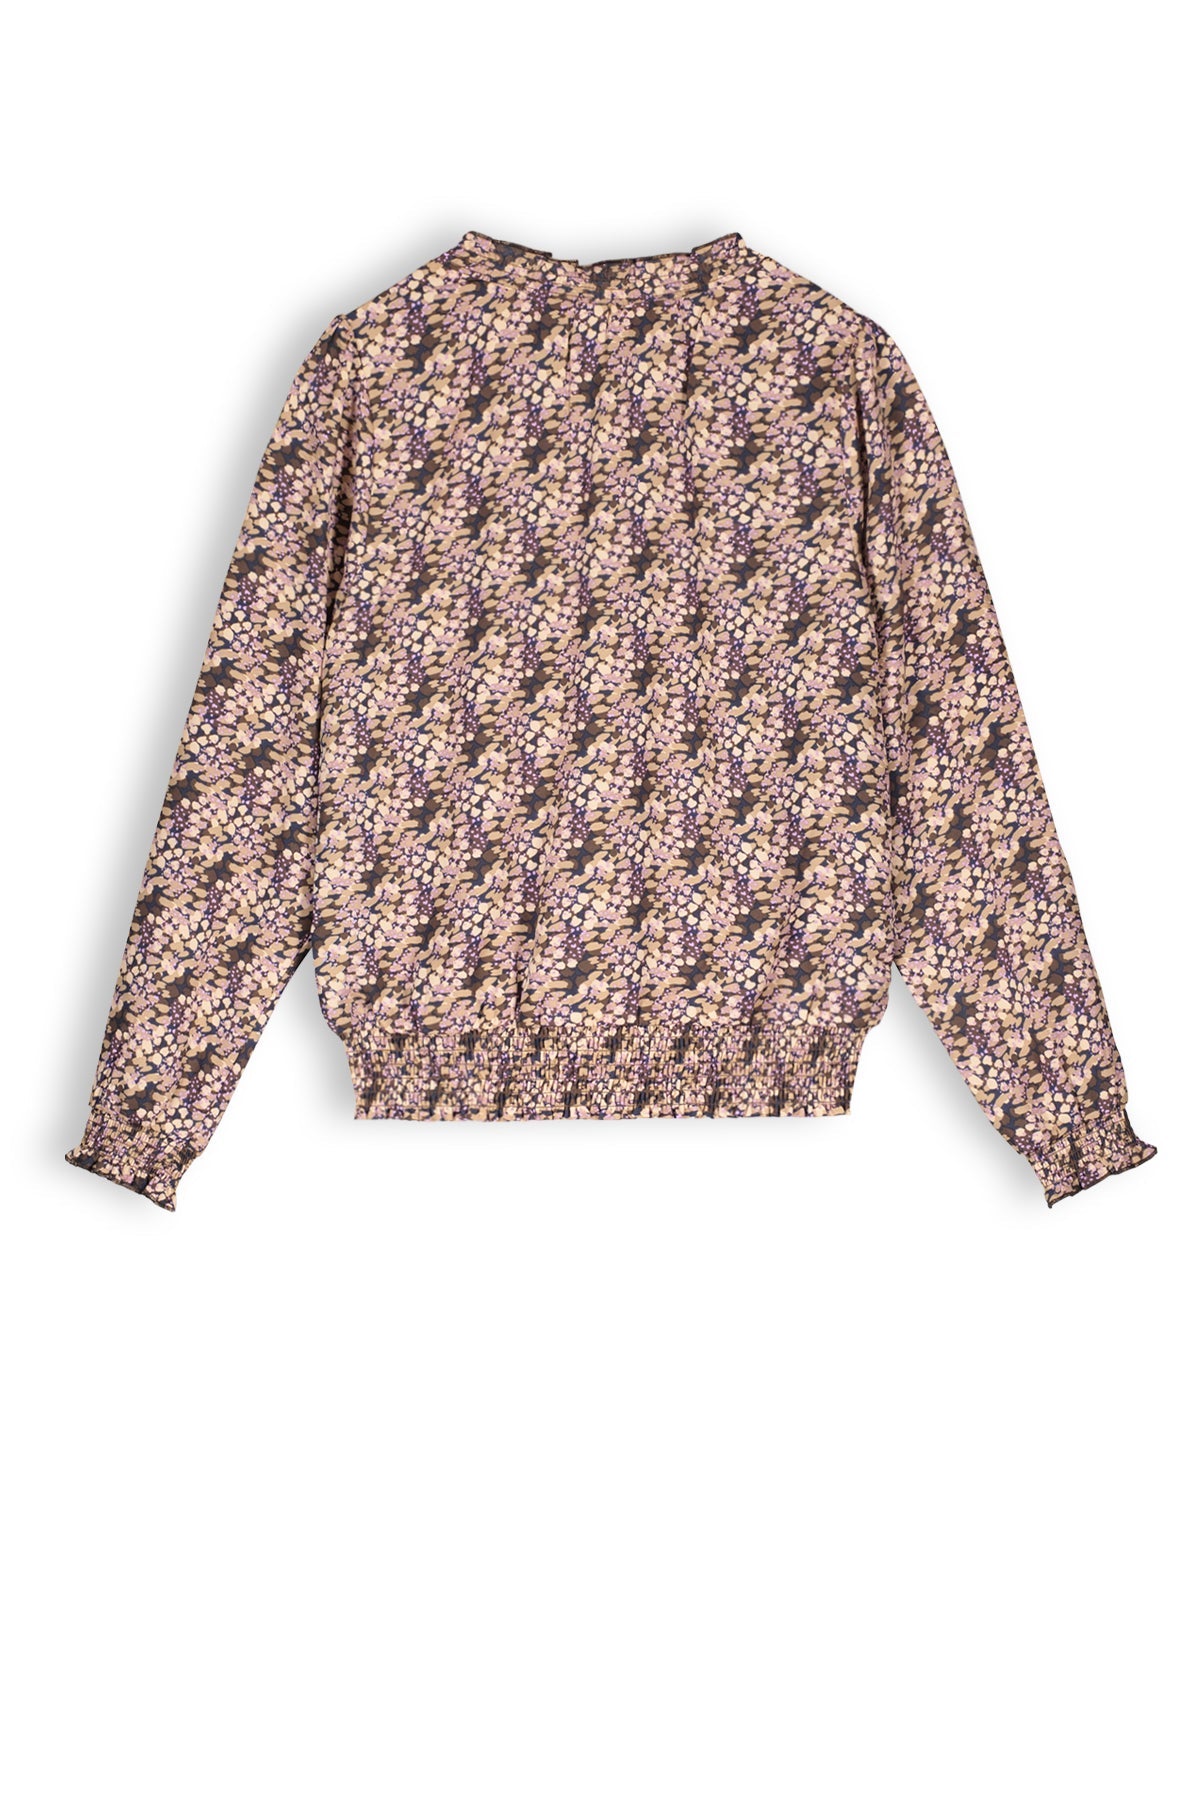 Meisjes Tommy girls printed blouse brown van NoBell in de kleur Dark Roast Brown in maat 170-176.